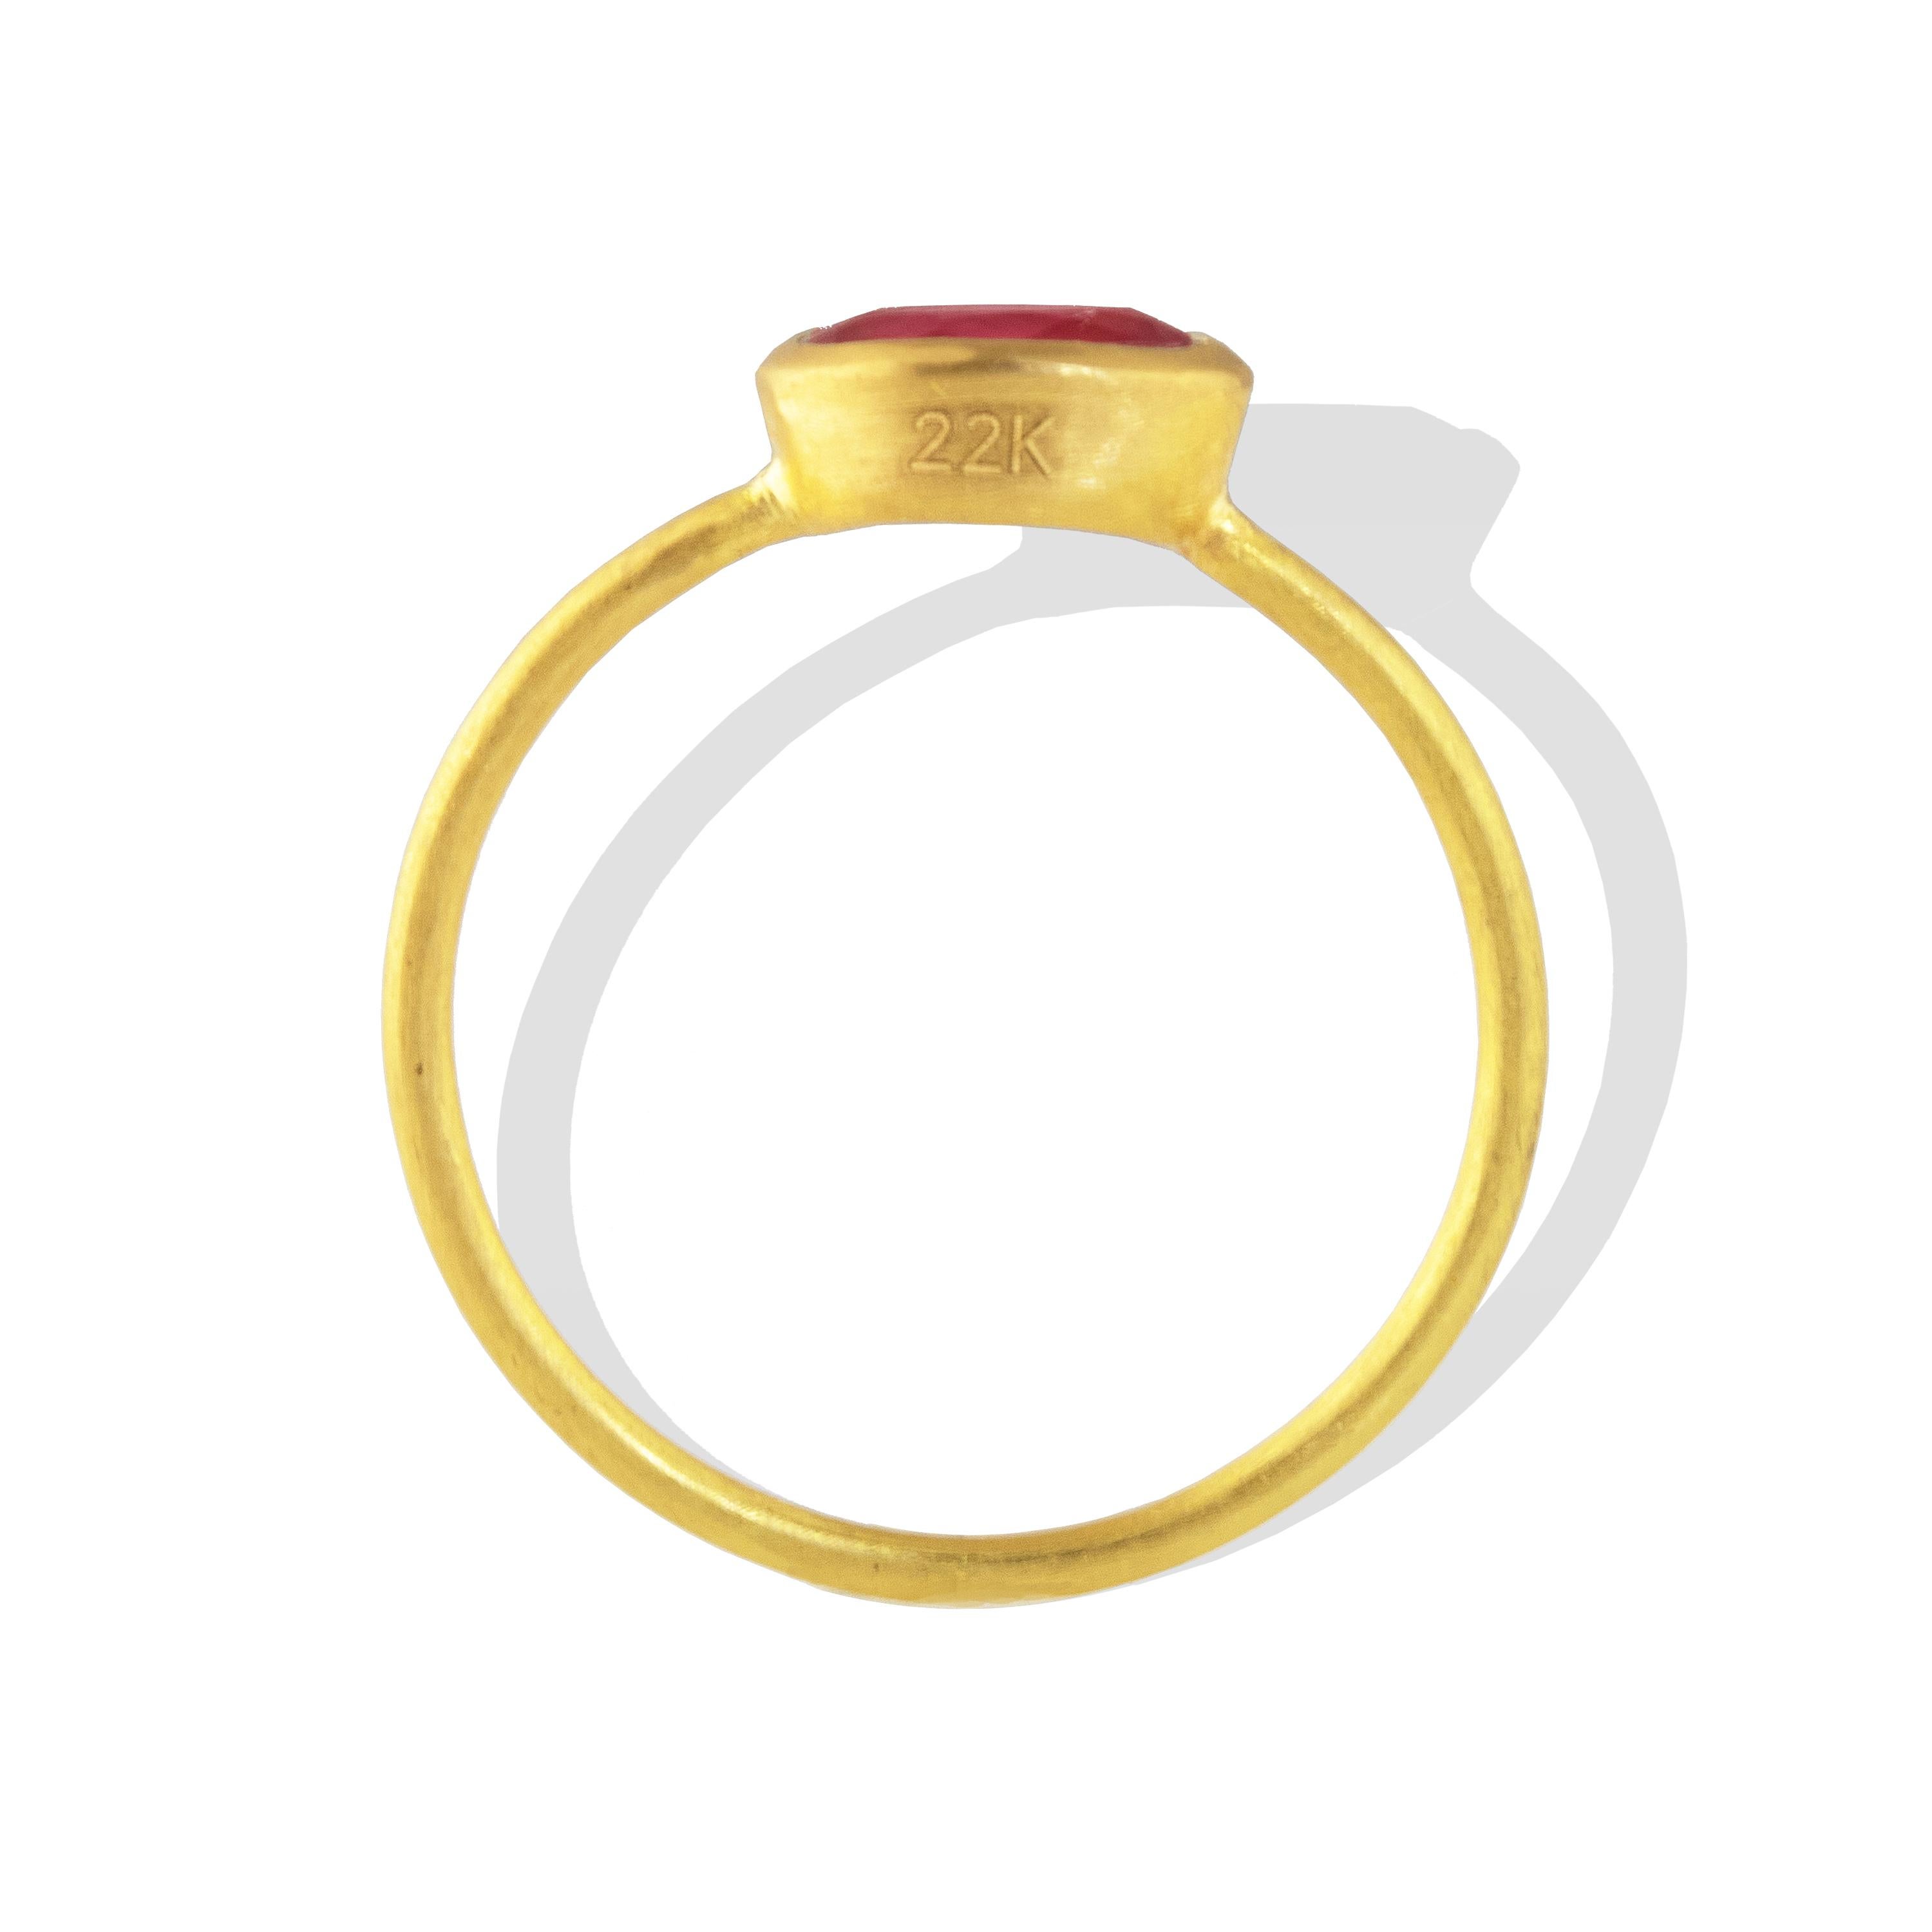 Ein ovaler Rubin-Stapelring mit 1,79 Karat. Perfekt, um ihn zu tragen oder mit anderen Ringen zu stapeln. Ein wunderschönes leuchtendes Rot, das sich mit dem Reichtum von 22-karätigem Gold verbindet. 

Seit der Antike sind Rubine bei Herrschern und